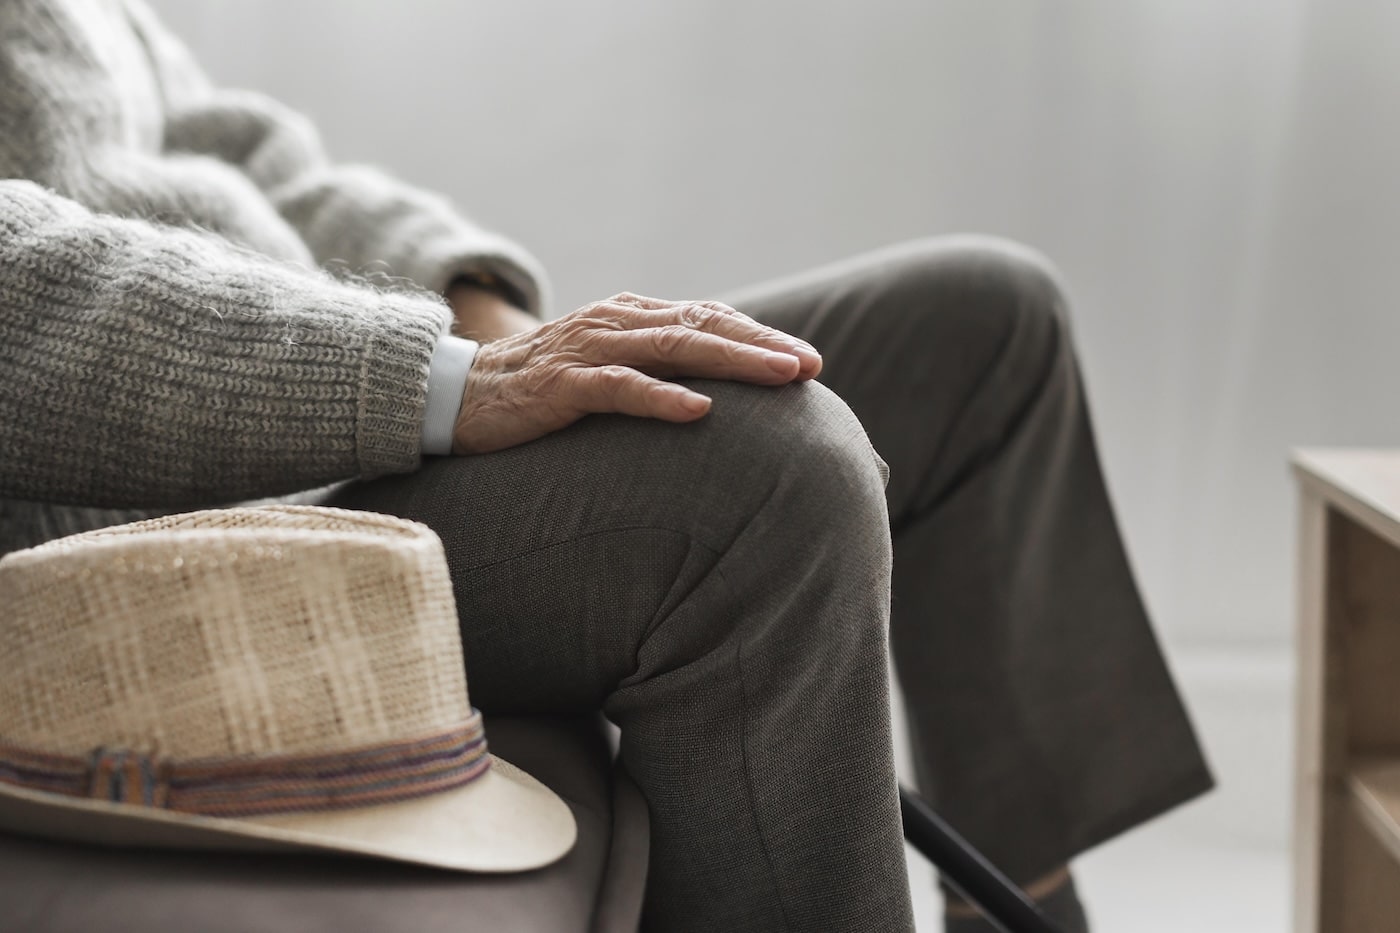 badante vitto e alloggio: persona anziana seduta con primo piano sul cappello poggiato sul tavolino e mano sul ginocchio